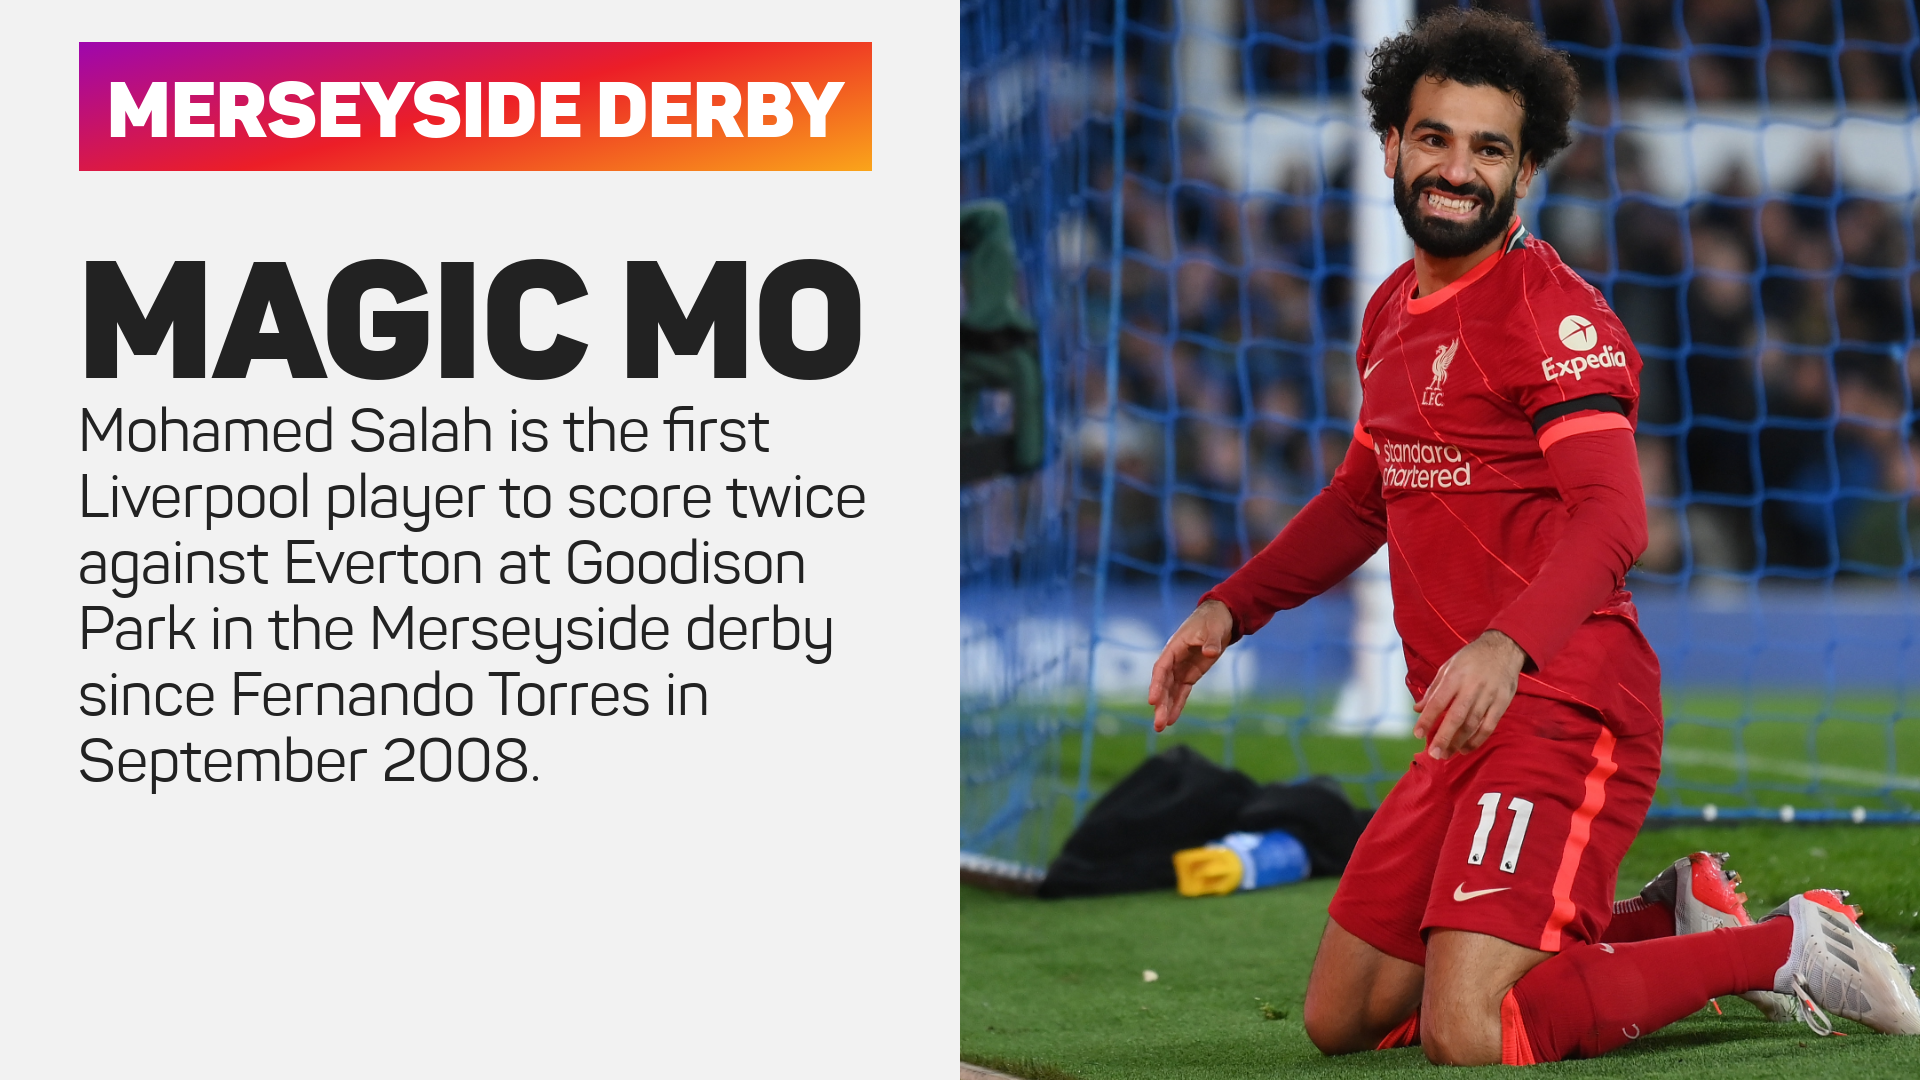 Mohamed Salah scored twice against Everton